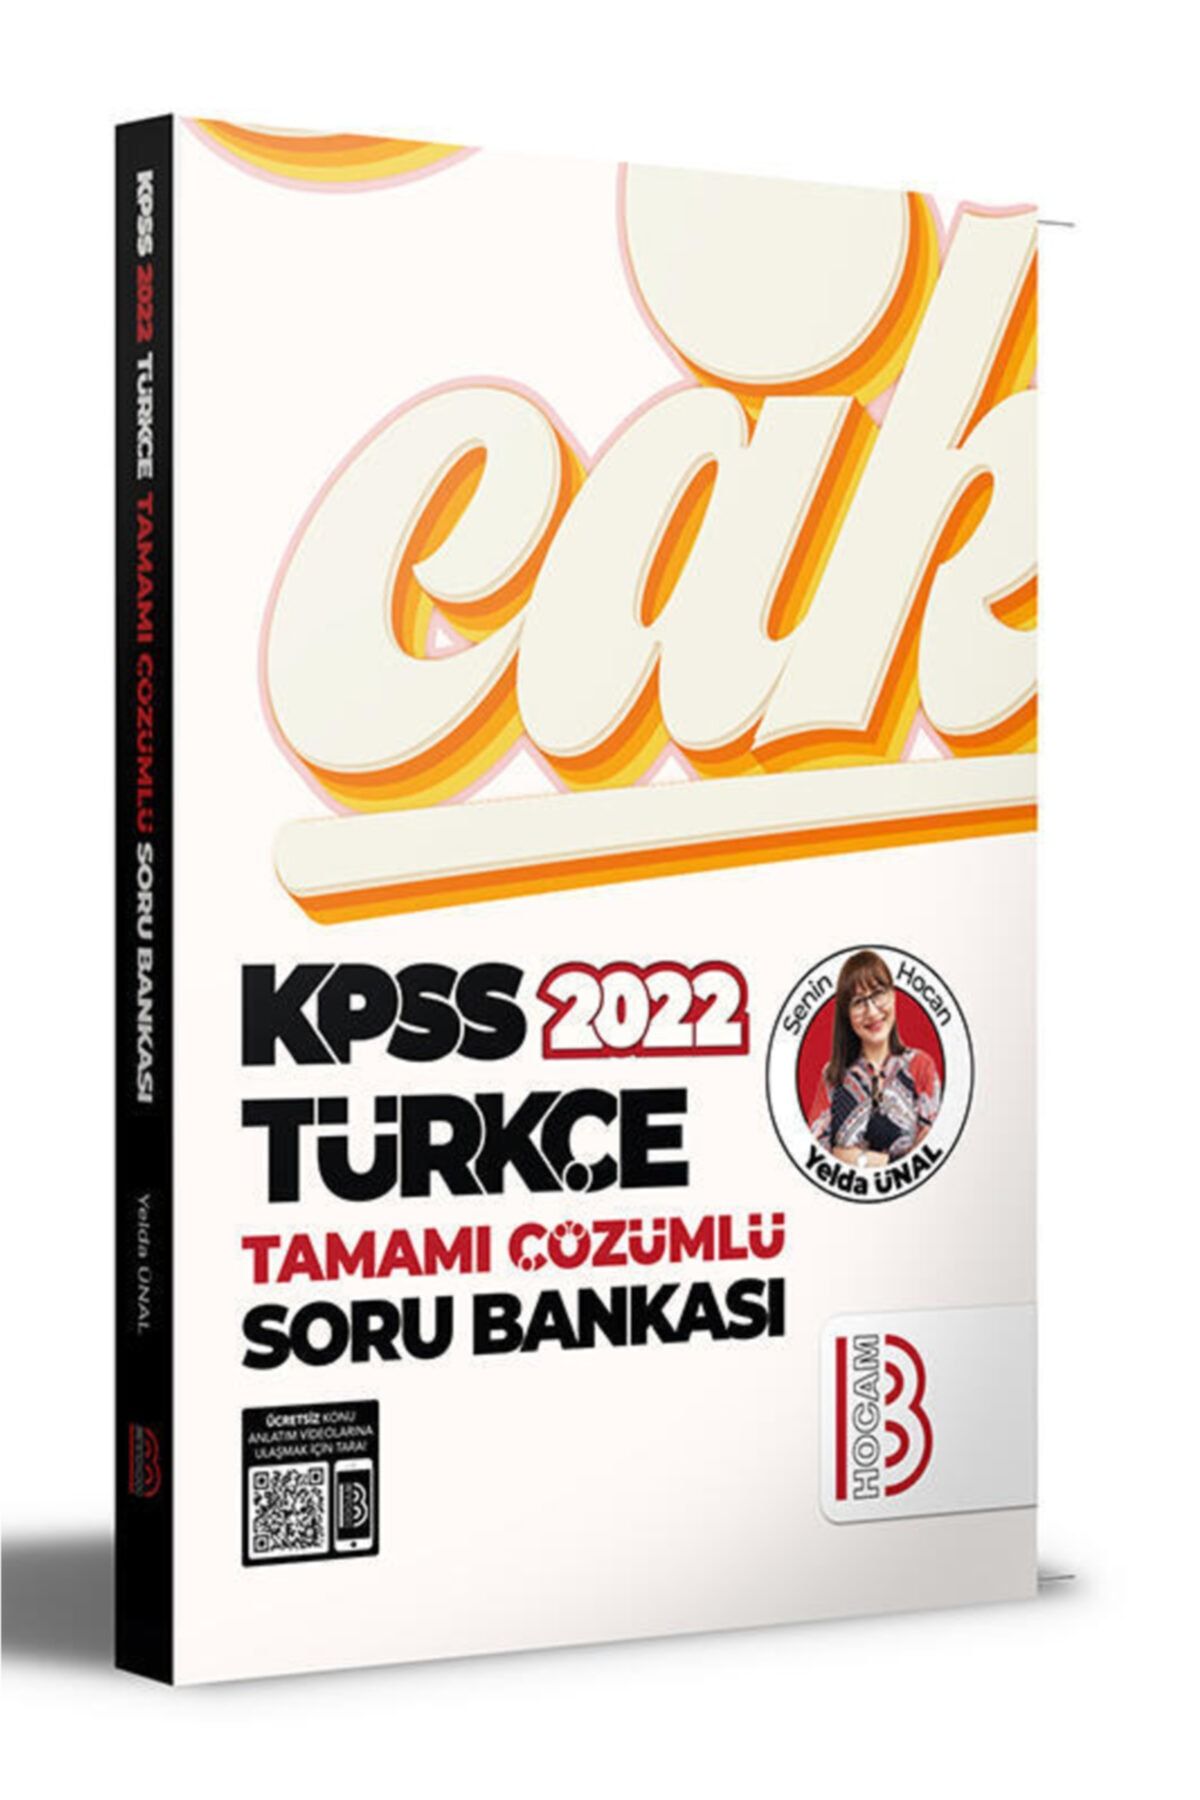 Benim Hocam Yayınları 2022 KPSS Türkçe Tamamı Çözümlü Soru Bankası